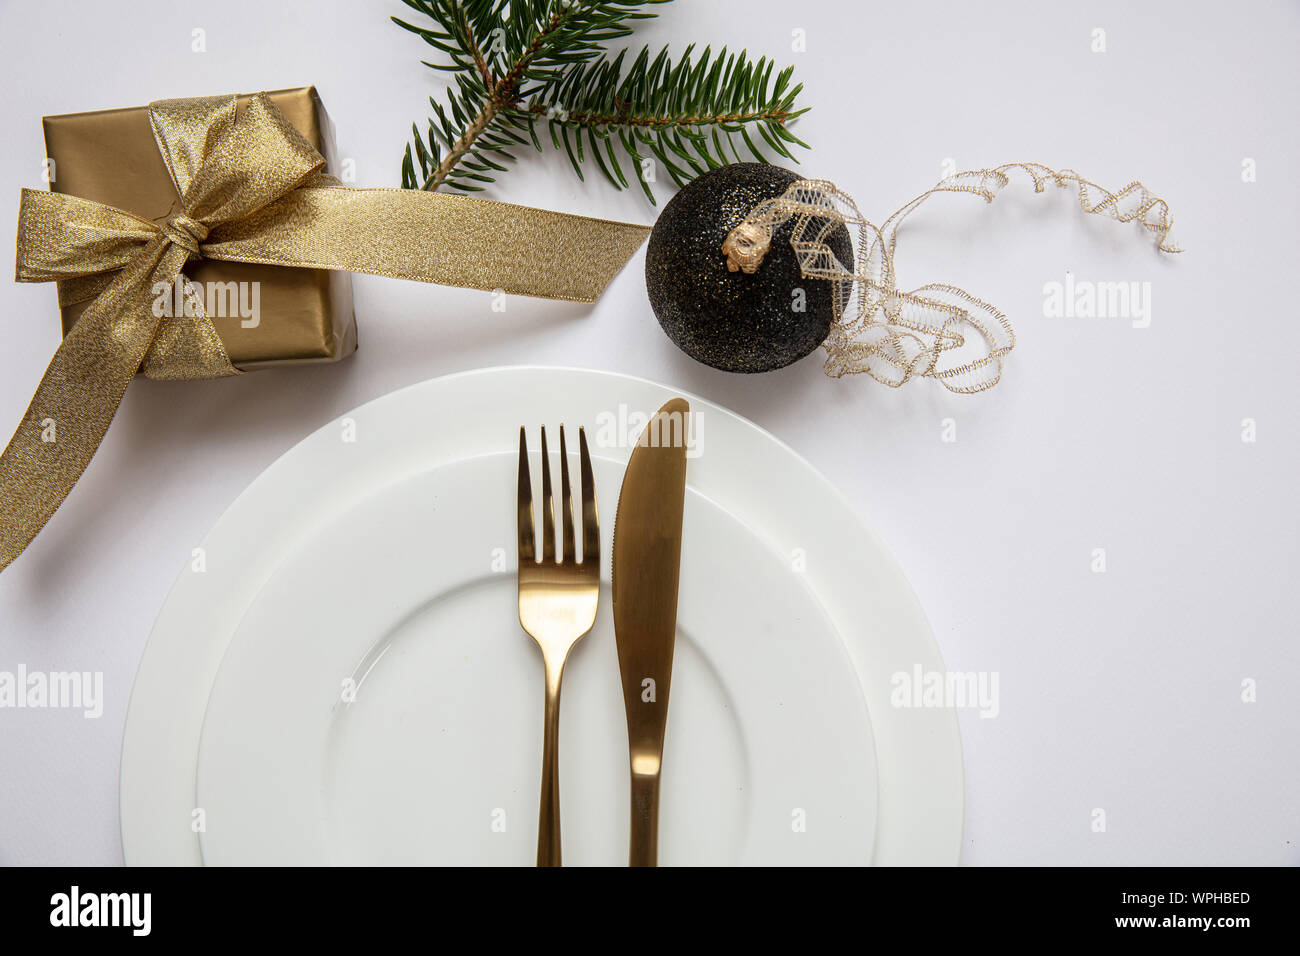 Table de dîner de Noël, cadeau d'Or et couverts sur l'ensemble de la vaisselle blanche, fond blanc, vue du dessus Banque D'Images